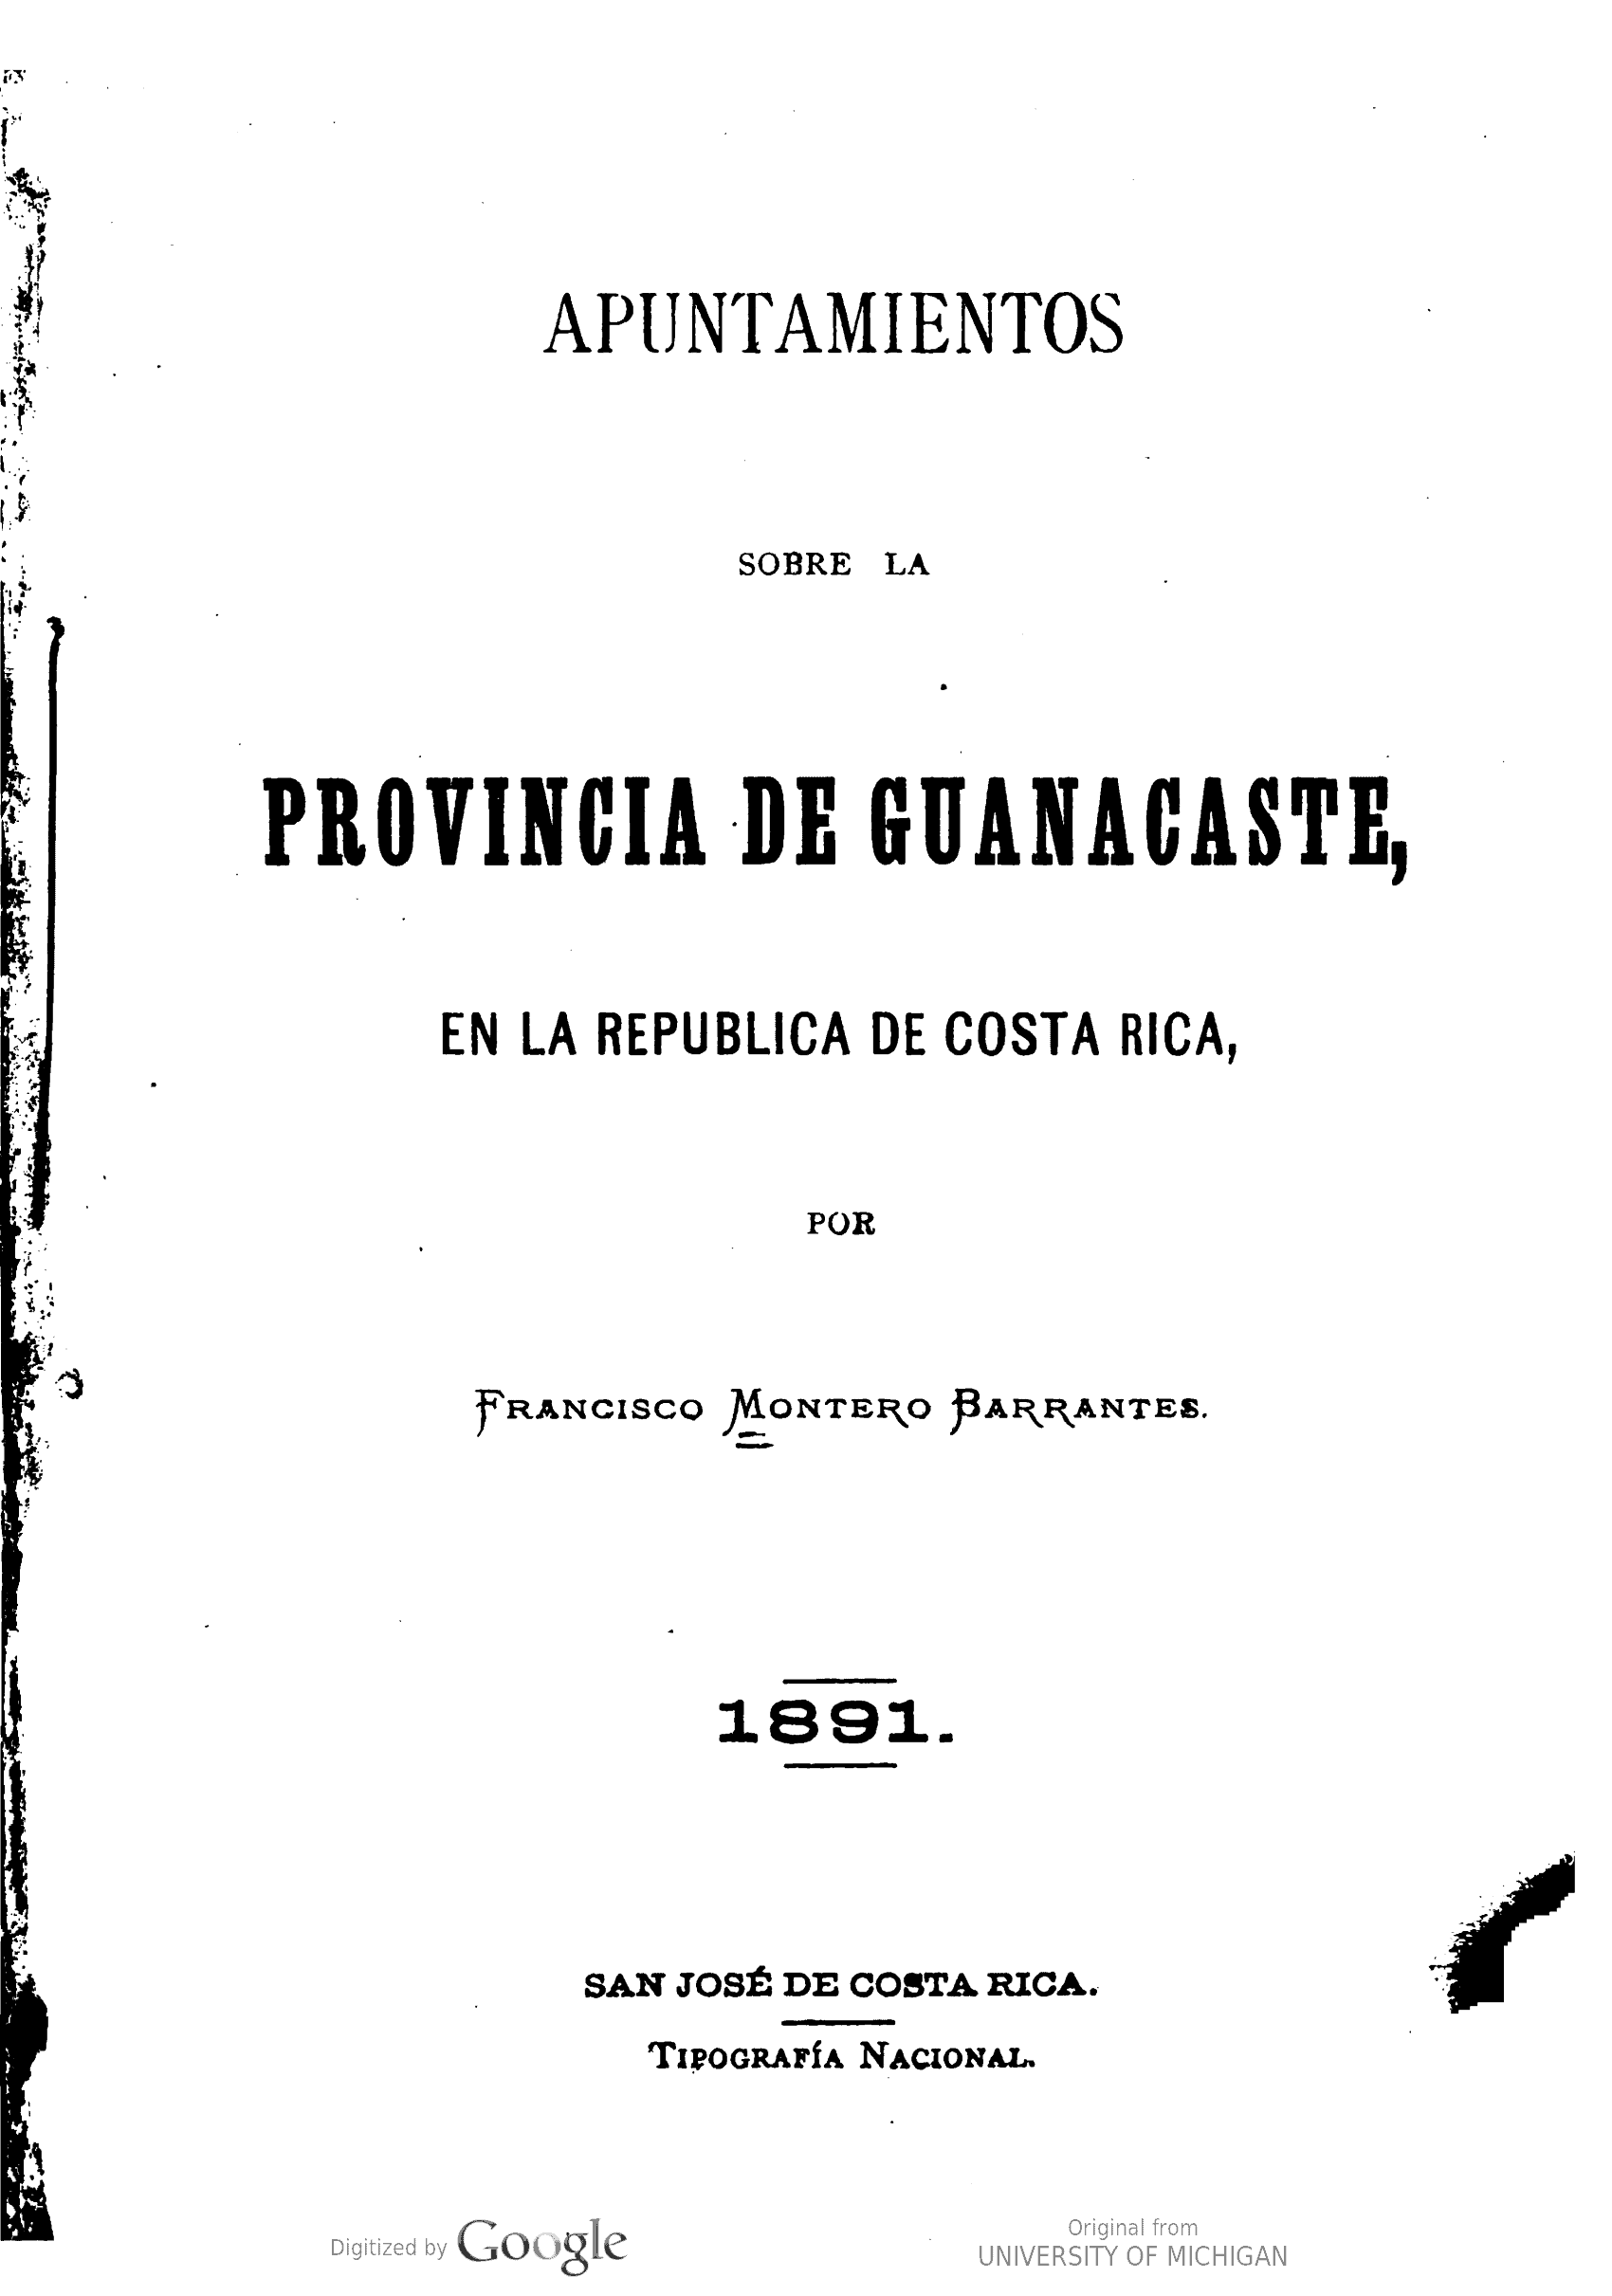 Apuntamientos sobre la provincia de Guanacaste, en la República de Costa Rica